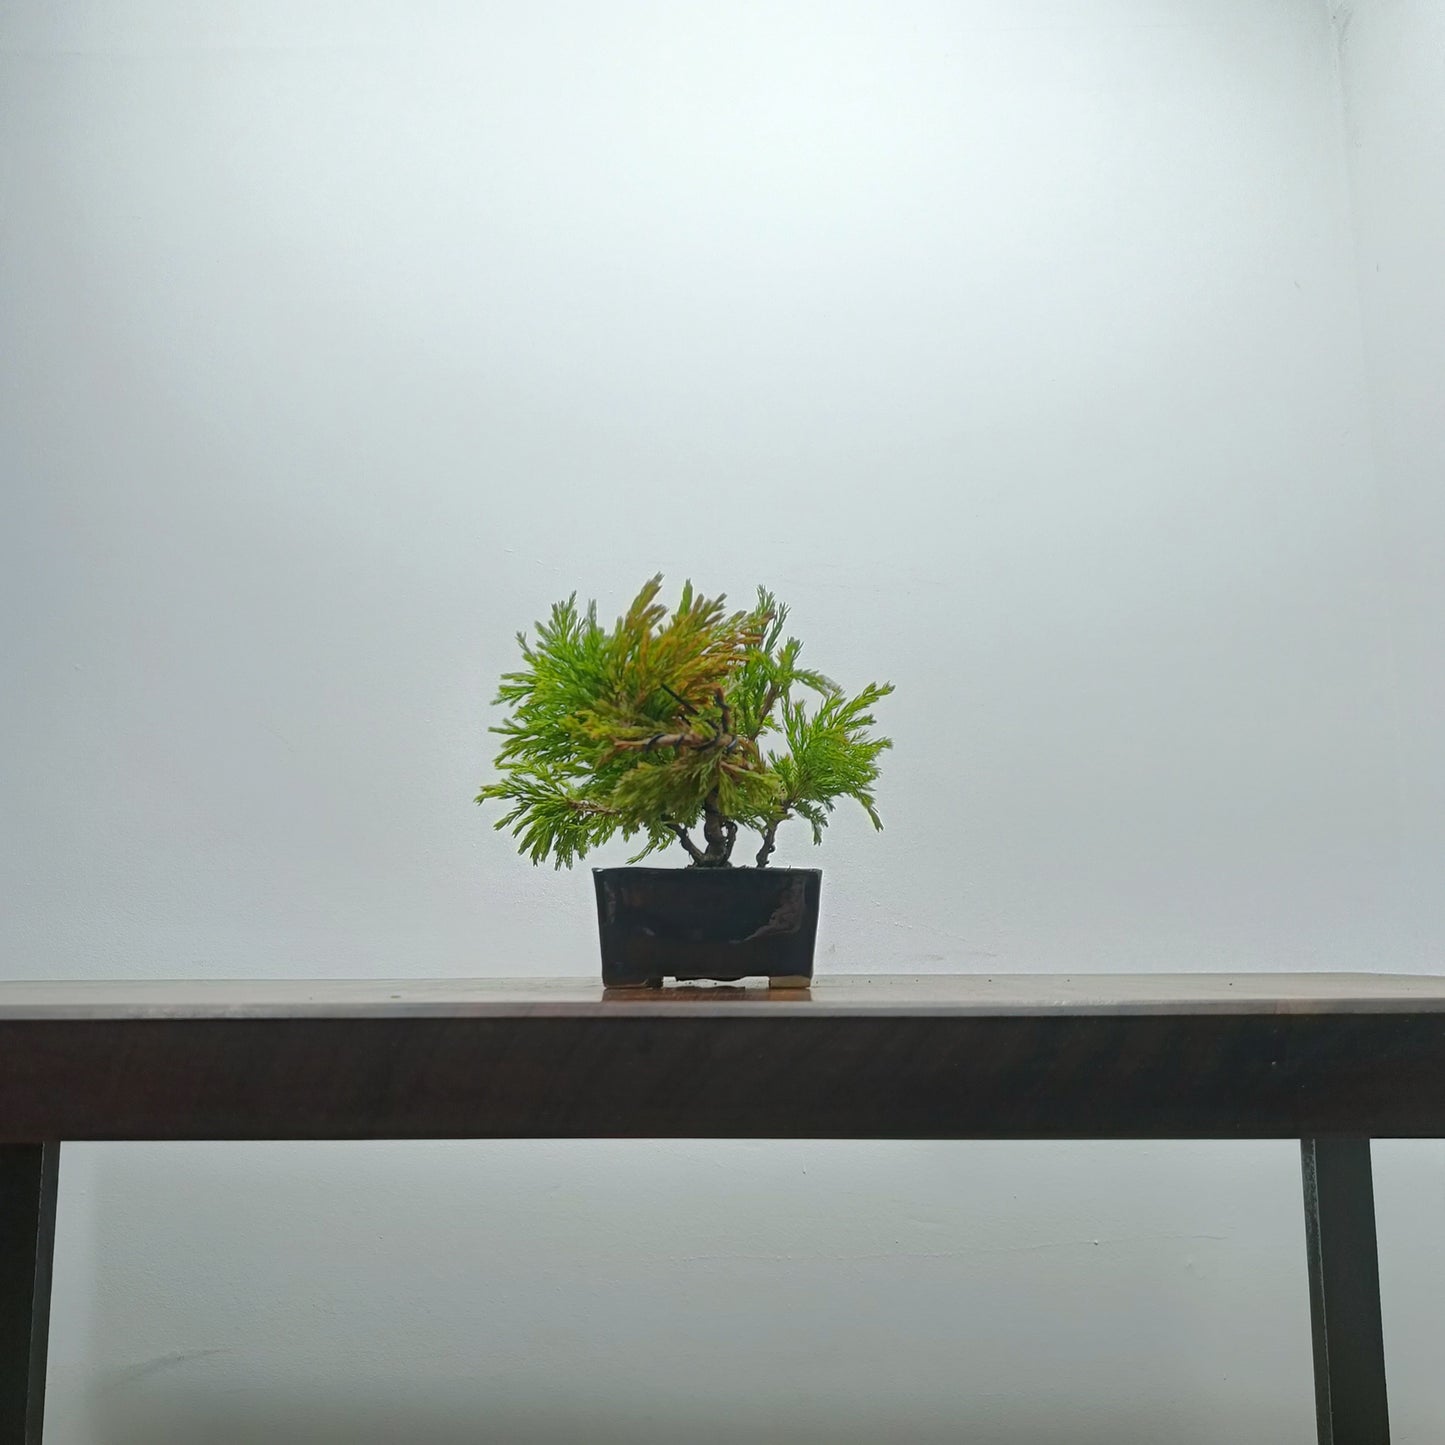 Juniper Bonsai